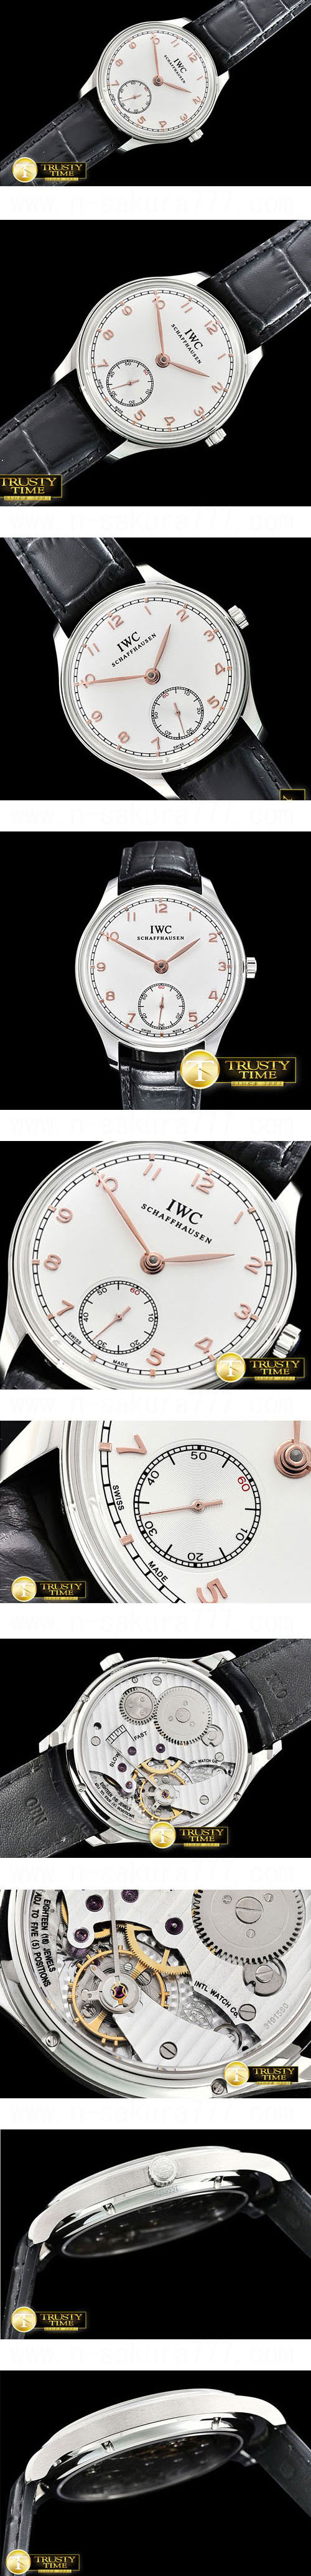 メンズ腕時計 IWC ポルトギーゼ・ハンドワインド Ref. IW5454 スーパーコピー時計  Automatic  ホワイト  スモールセコンド